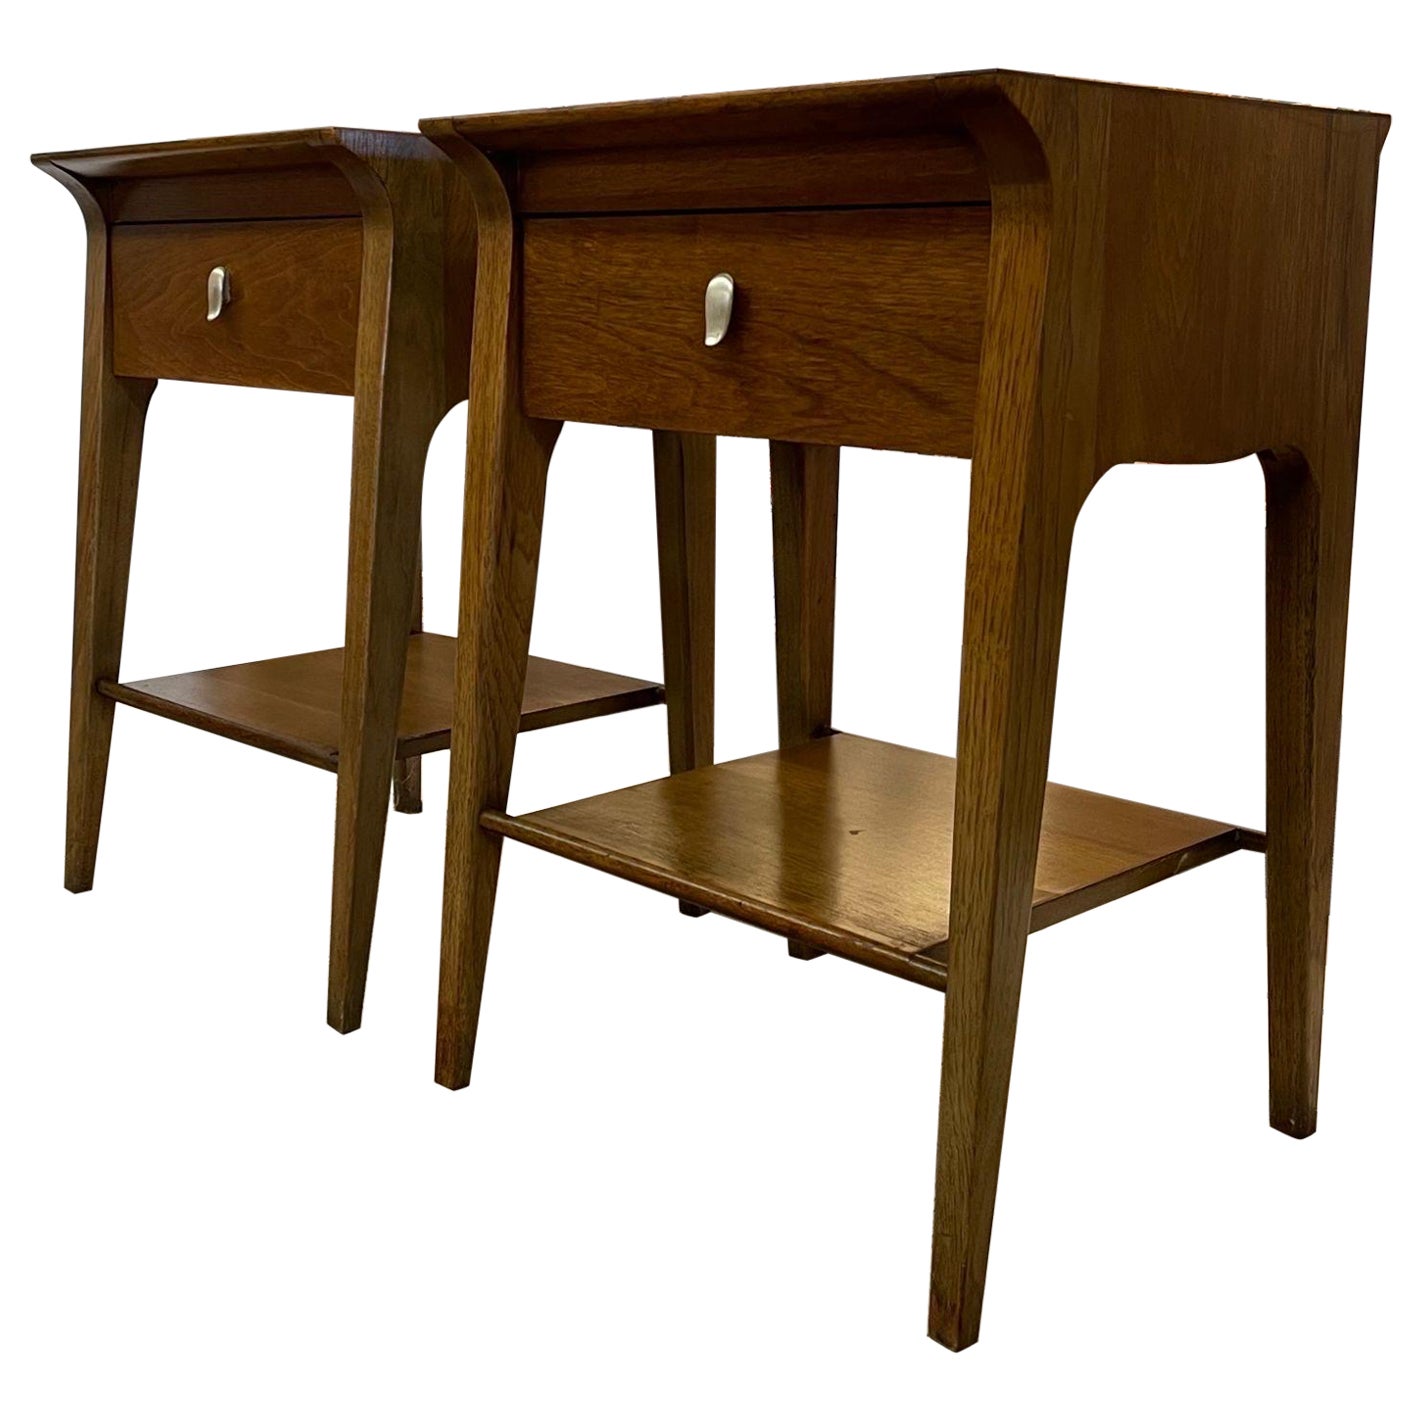 Pair of Vintage Mid Century Modern End Tables by Drexel Profile John Van Koert For Sale